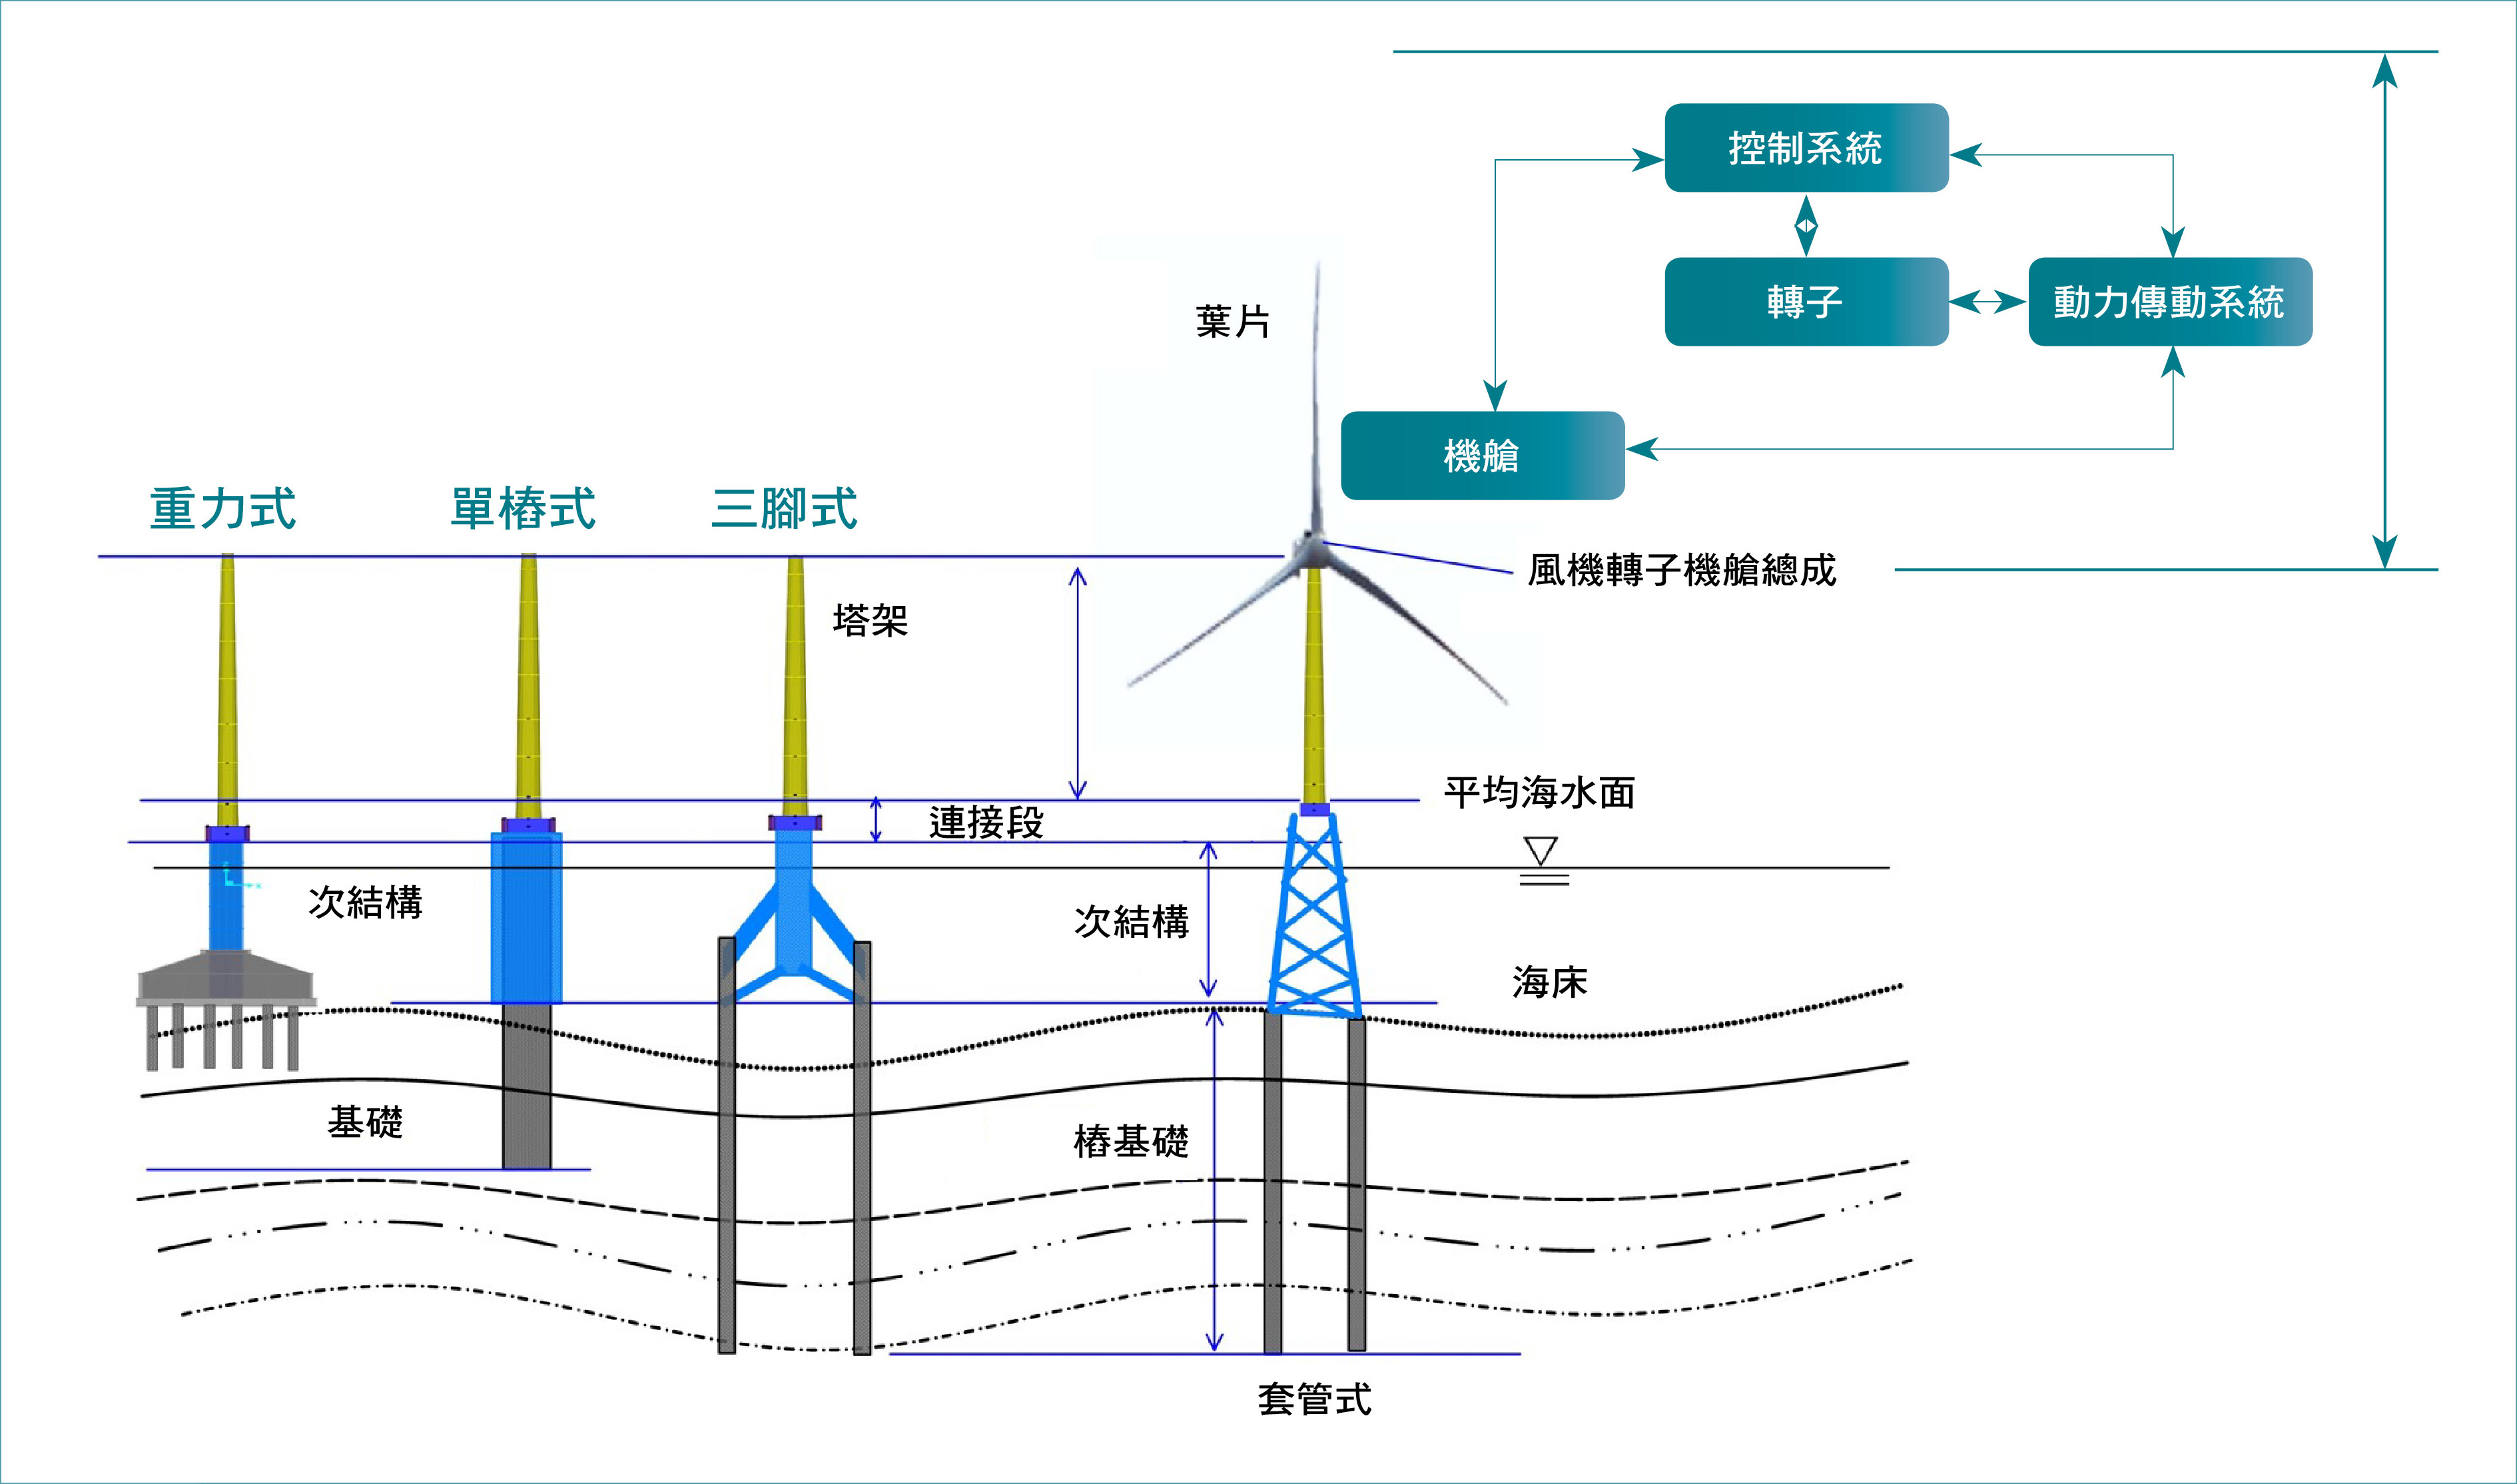 常見的離岸風機固定式水下結構型式，以及離岸風機與支撐結構組成概念圖。